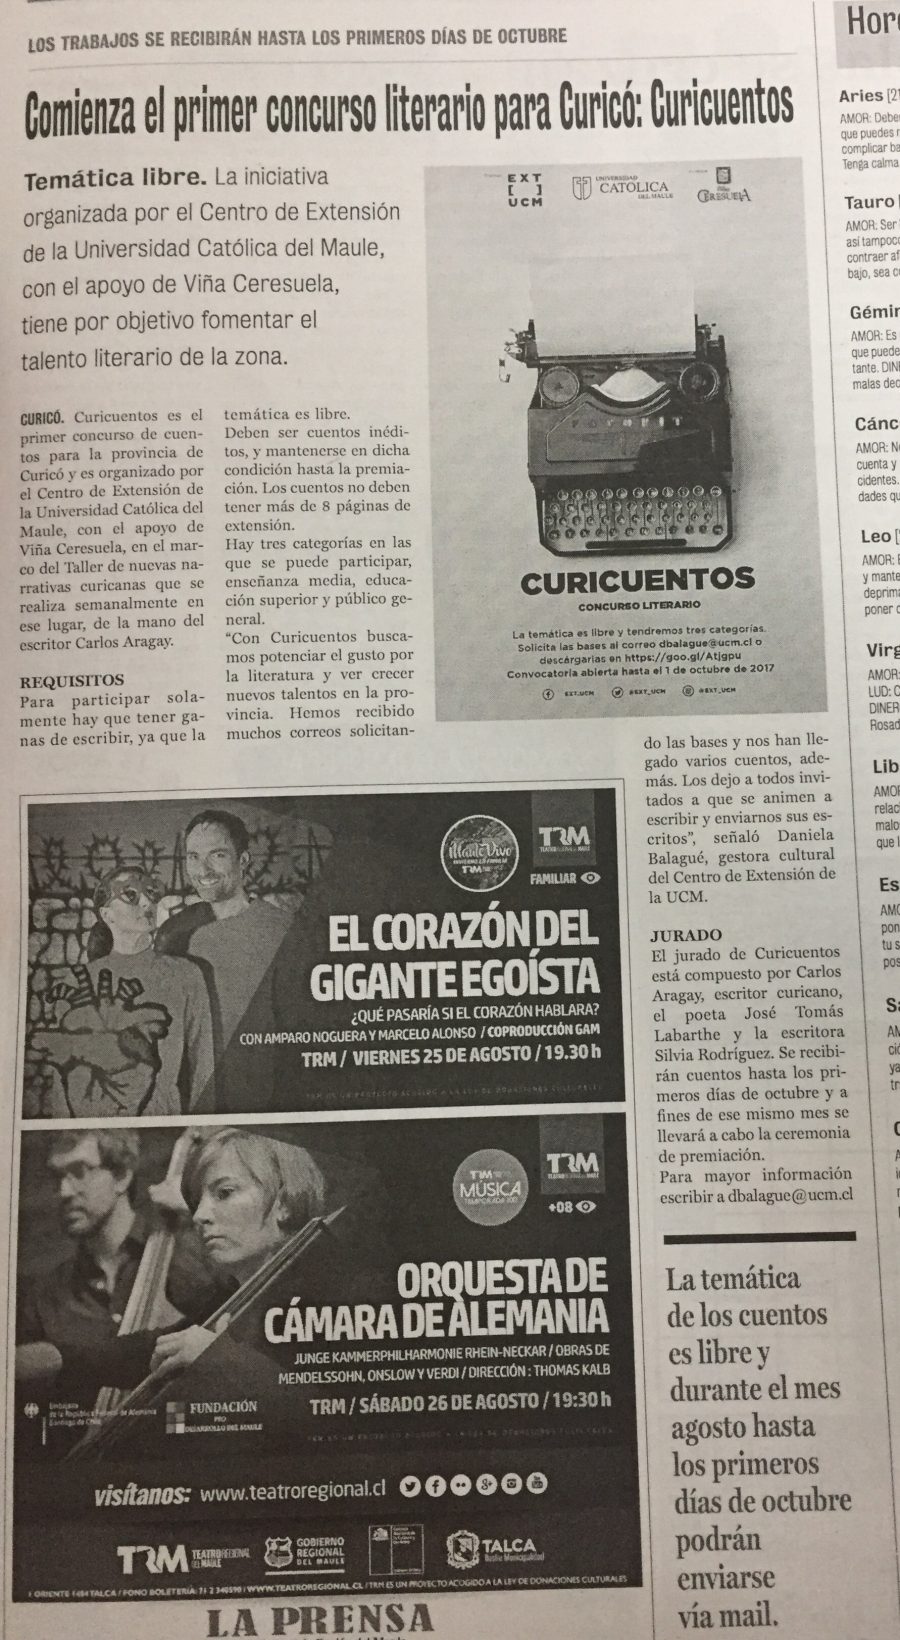 22 de agosto en Diario La Prensa: “Comienza el primer concurso literario para Curicó: Curicuentos”